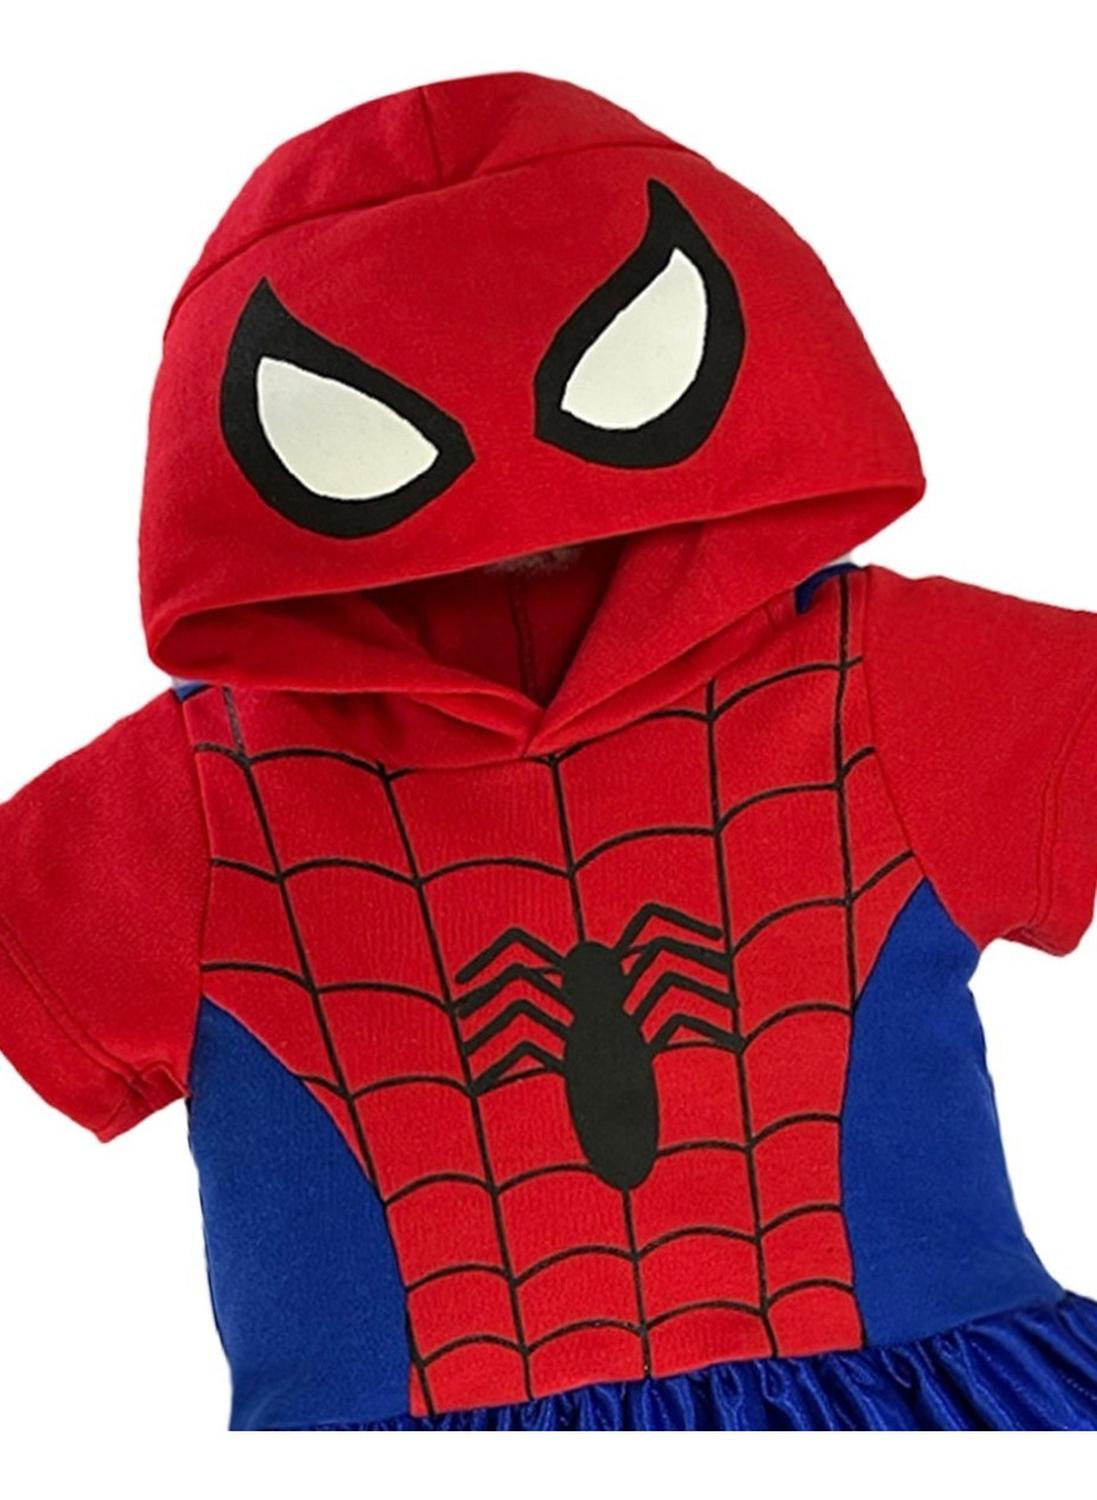 Vestido Marvel Estampado Spiderman